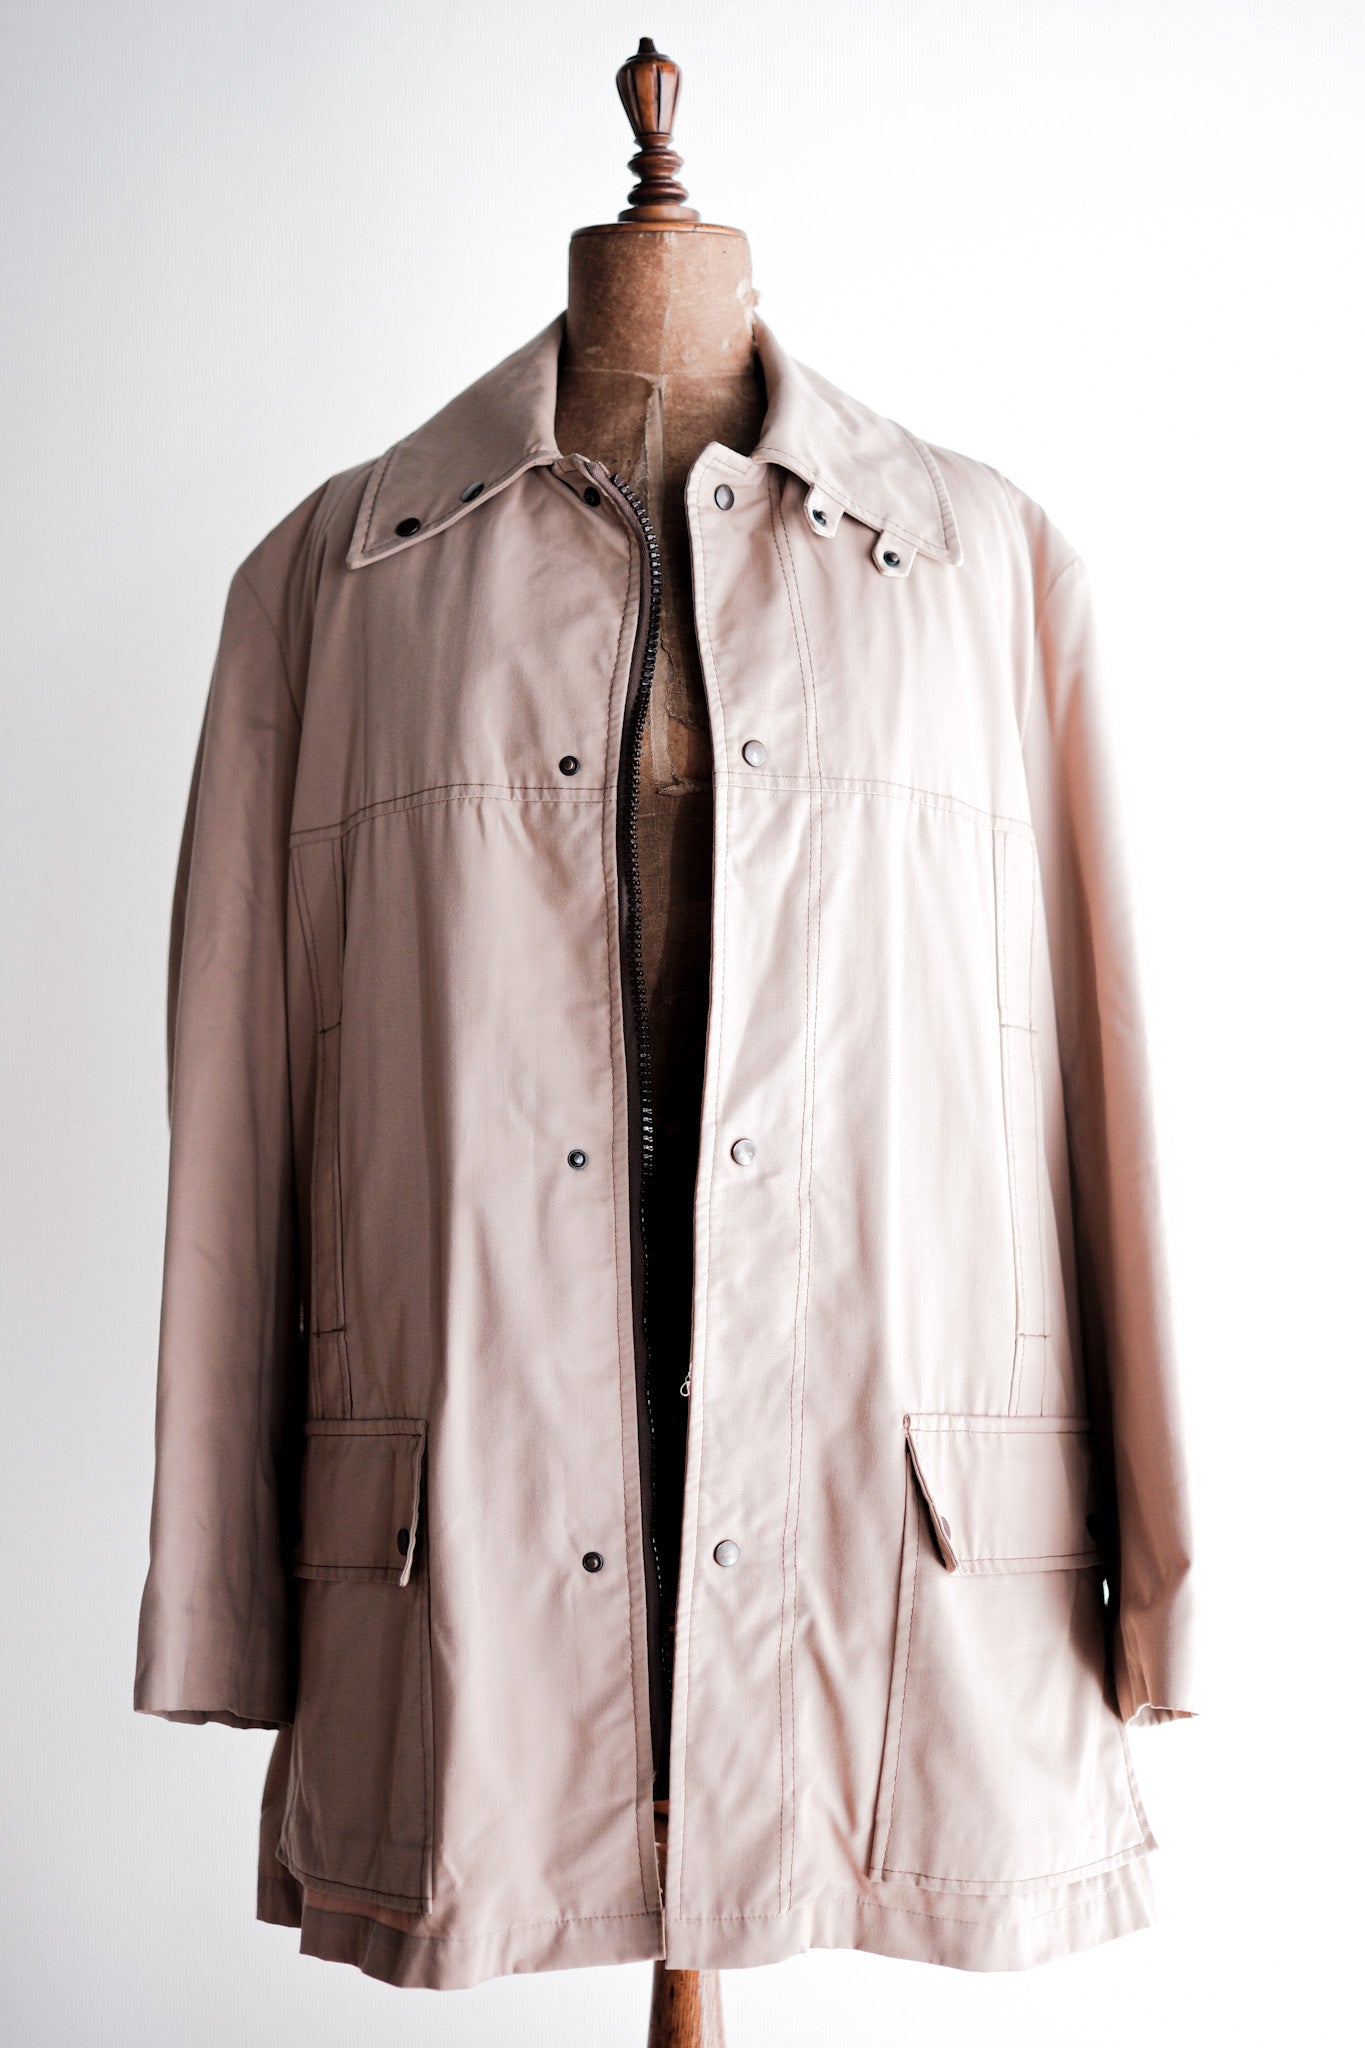 [〜80年代]復古Grenfell戶外夾克尺寸。40“ JC.Cordings＆Co.ltd”